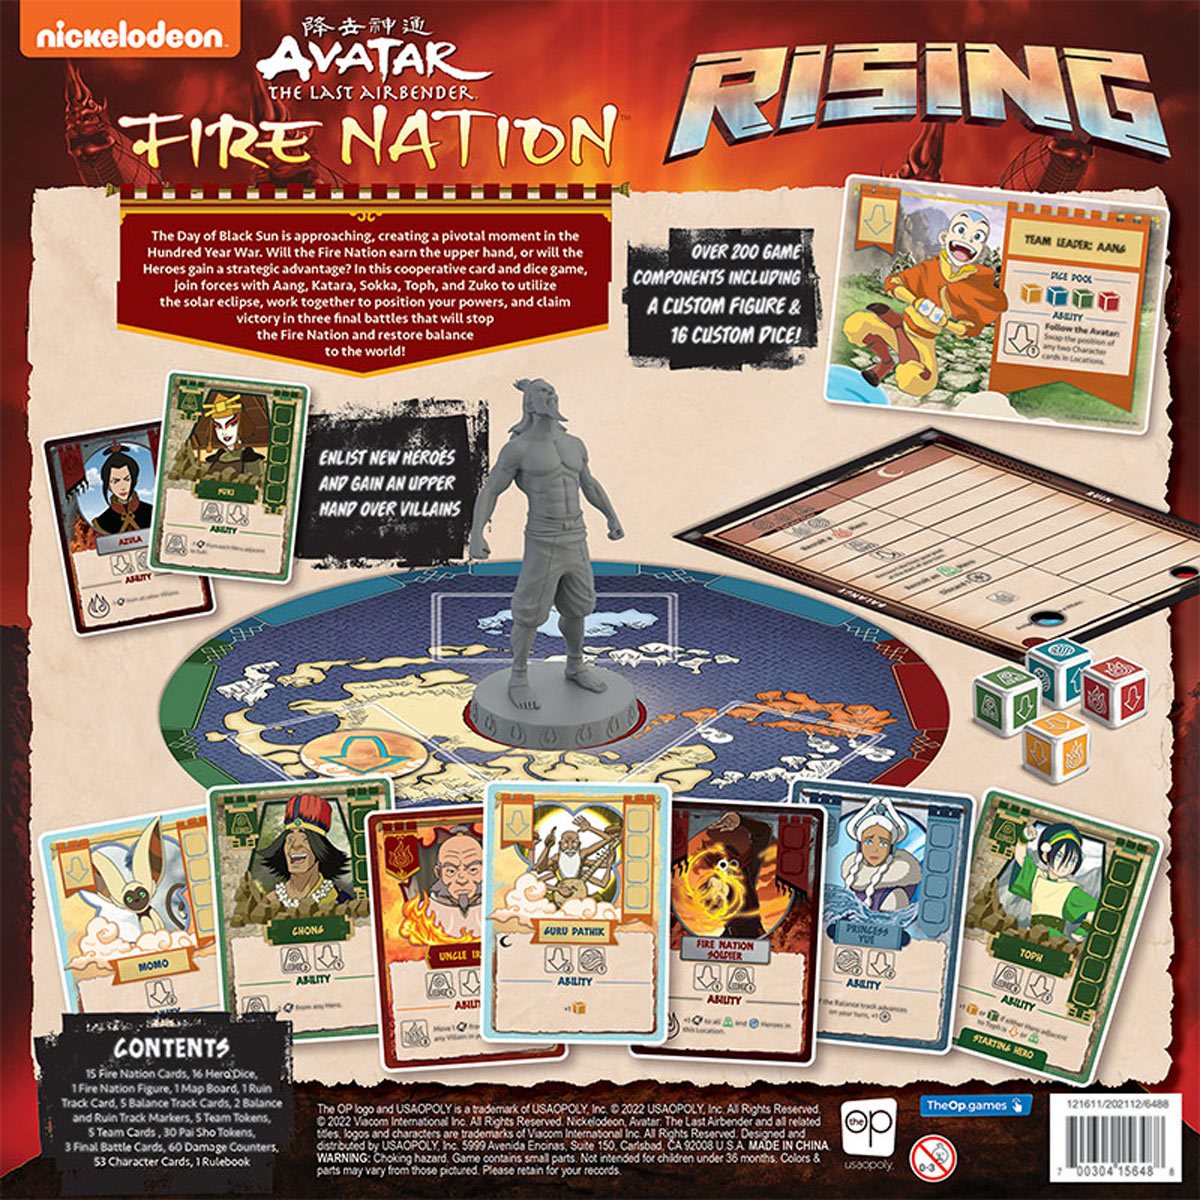 Trò chơi Avatar The Last Airbender Fire Nation Rising được đánh giá là một trong những trò chơi tuyệt vời nhất về thế giới Avatar. Với những hiệu ứng âm thanh và hình ảnh chân thực, bạn sẽ cảm nhận được những pha hành động đầy kịch tính trong trận đấu với quân địch.